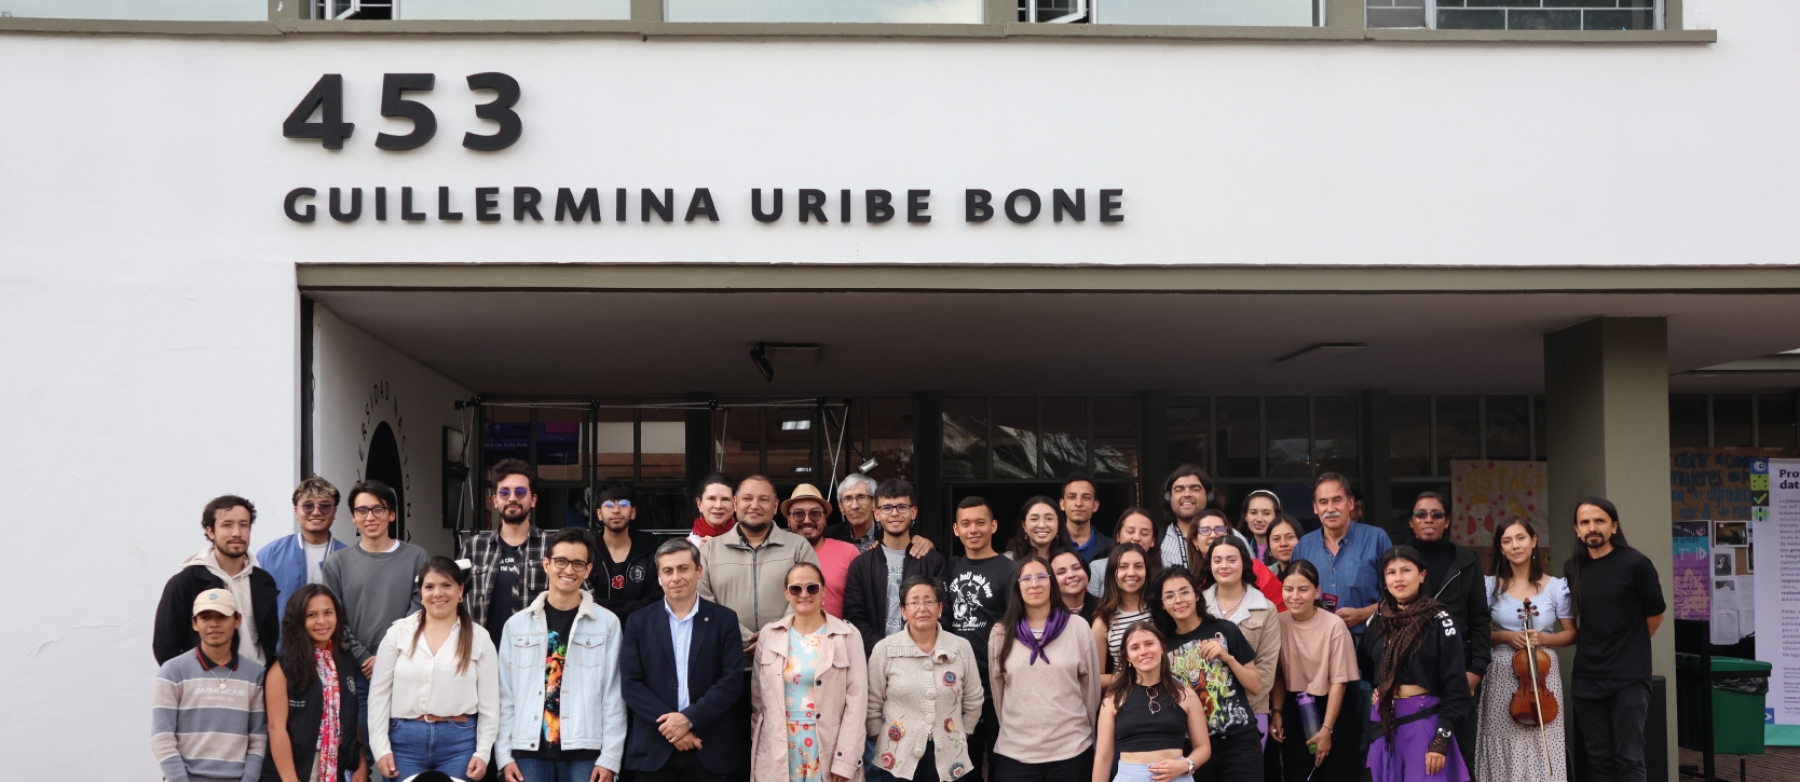 Facultad de Ingeniería conmemora Día Internacional de la Mujer y rinde homenaje a Guillermina Uribe Bone.